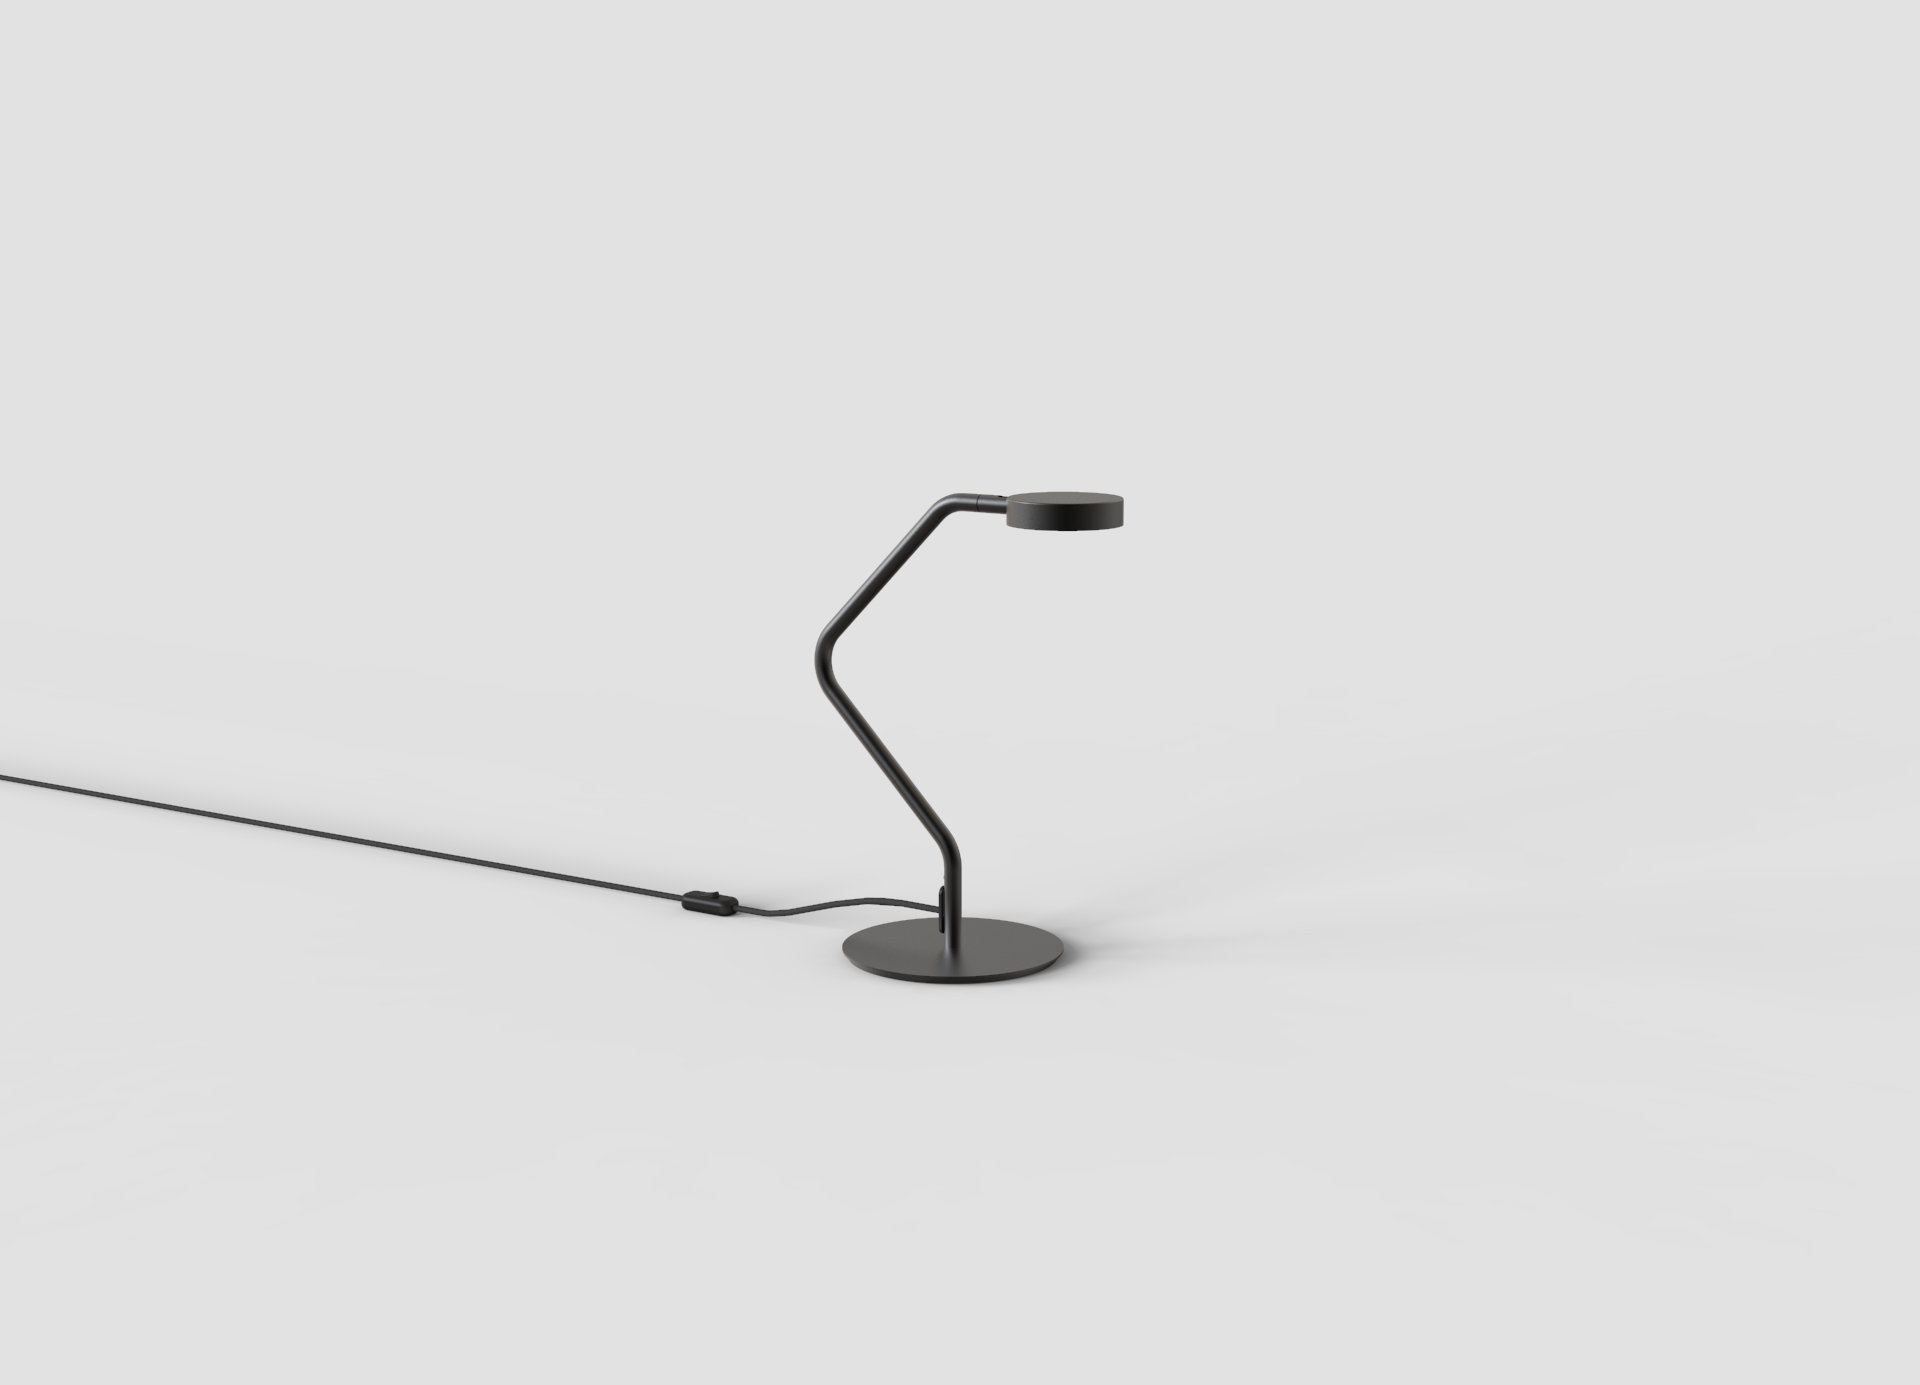 Cap table lamp